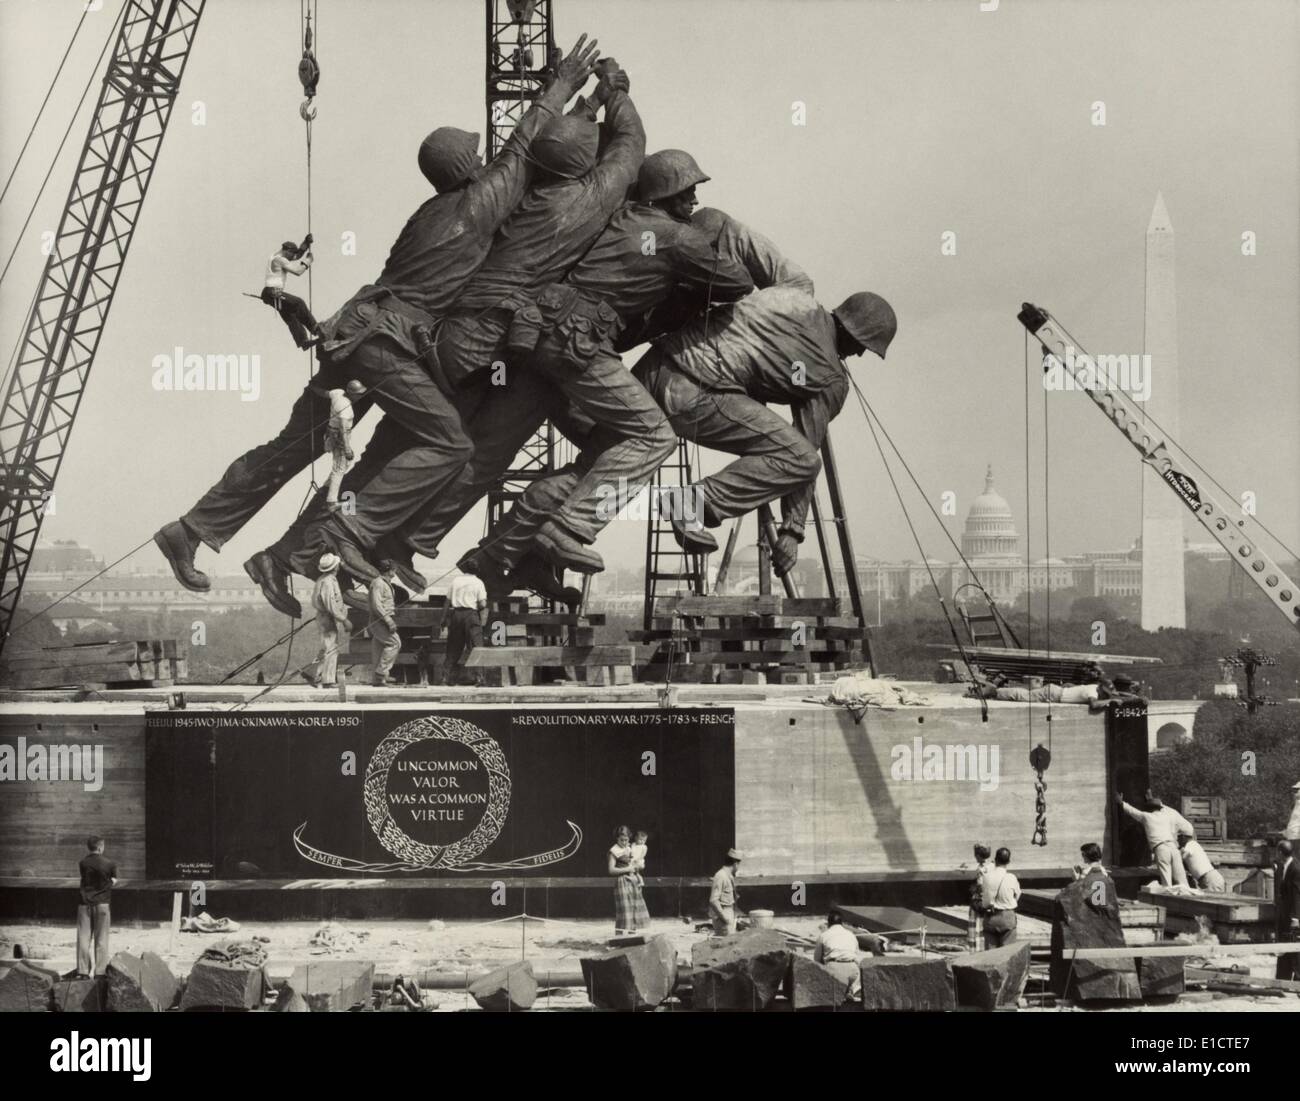 Il posizionamento della statua raffigurante marines sollevando la bandiera americana sul Monte Suribachi, Iwo Jima. La scultura per la Marina Foto Stock